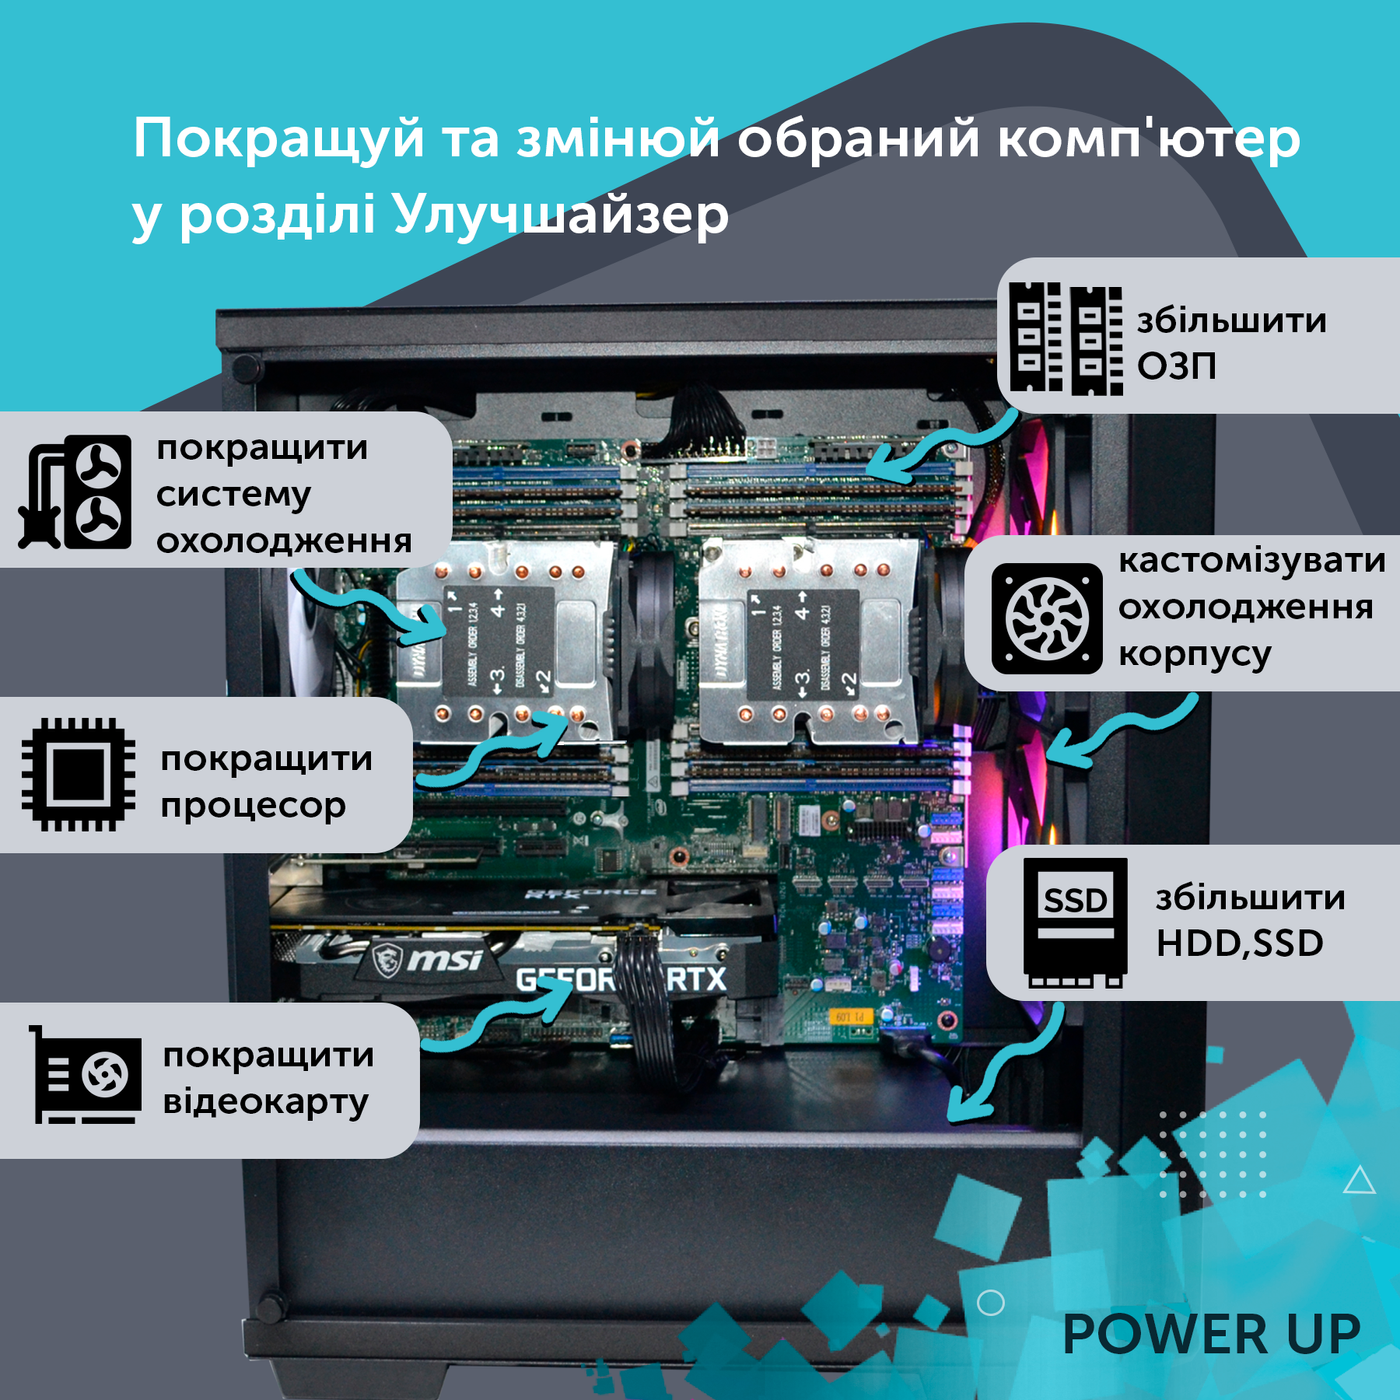 Двухпроцессорная рабочая станция PowerUp #348 Xeon E5 2673 v4 x2/256 GB/HDD 1 TB/SSD 512GB/NVIDIA Quadro RTX A2000 6GB